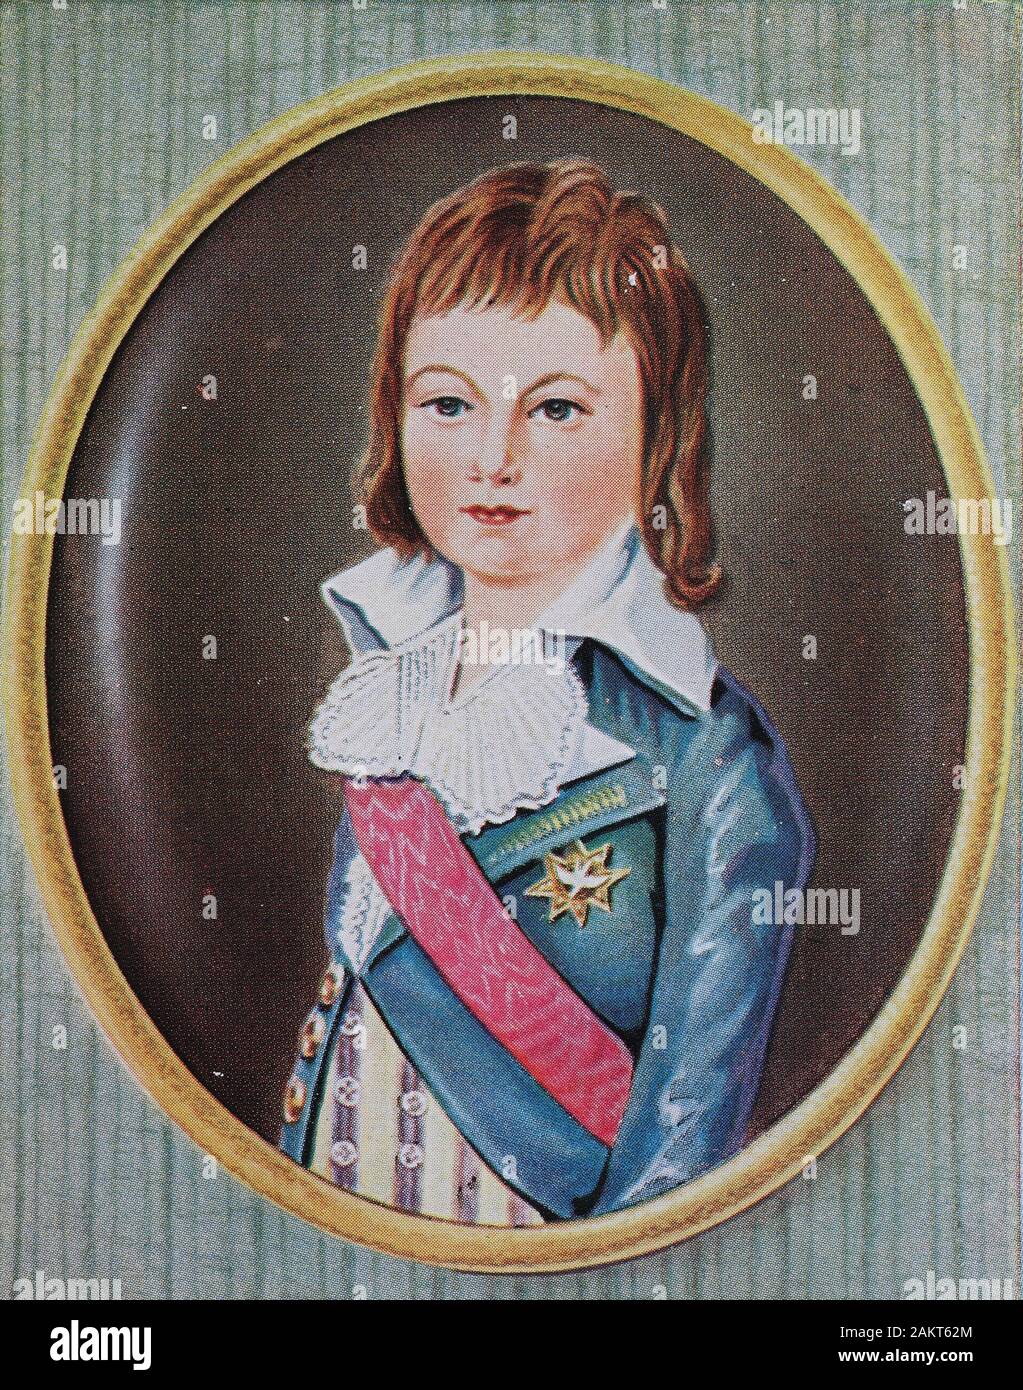 ~~~ ORGINAL~~~ POSTKARTE ~~~ Kaiserin Marie Antoniette von Frankereich